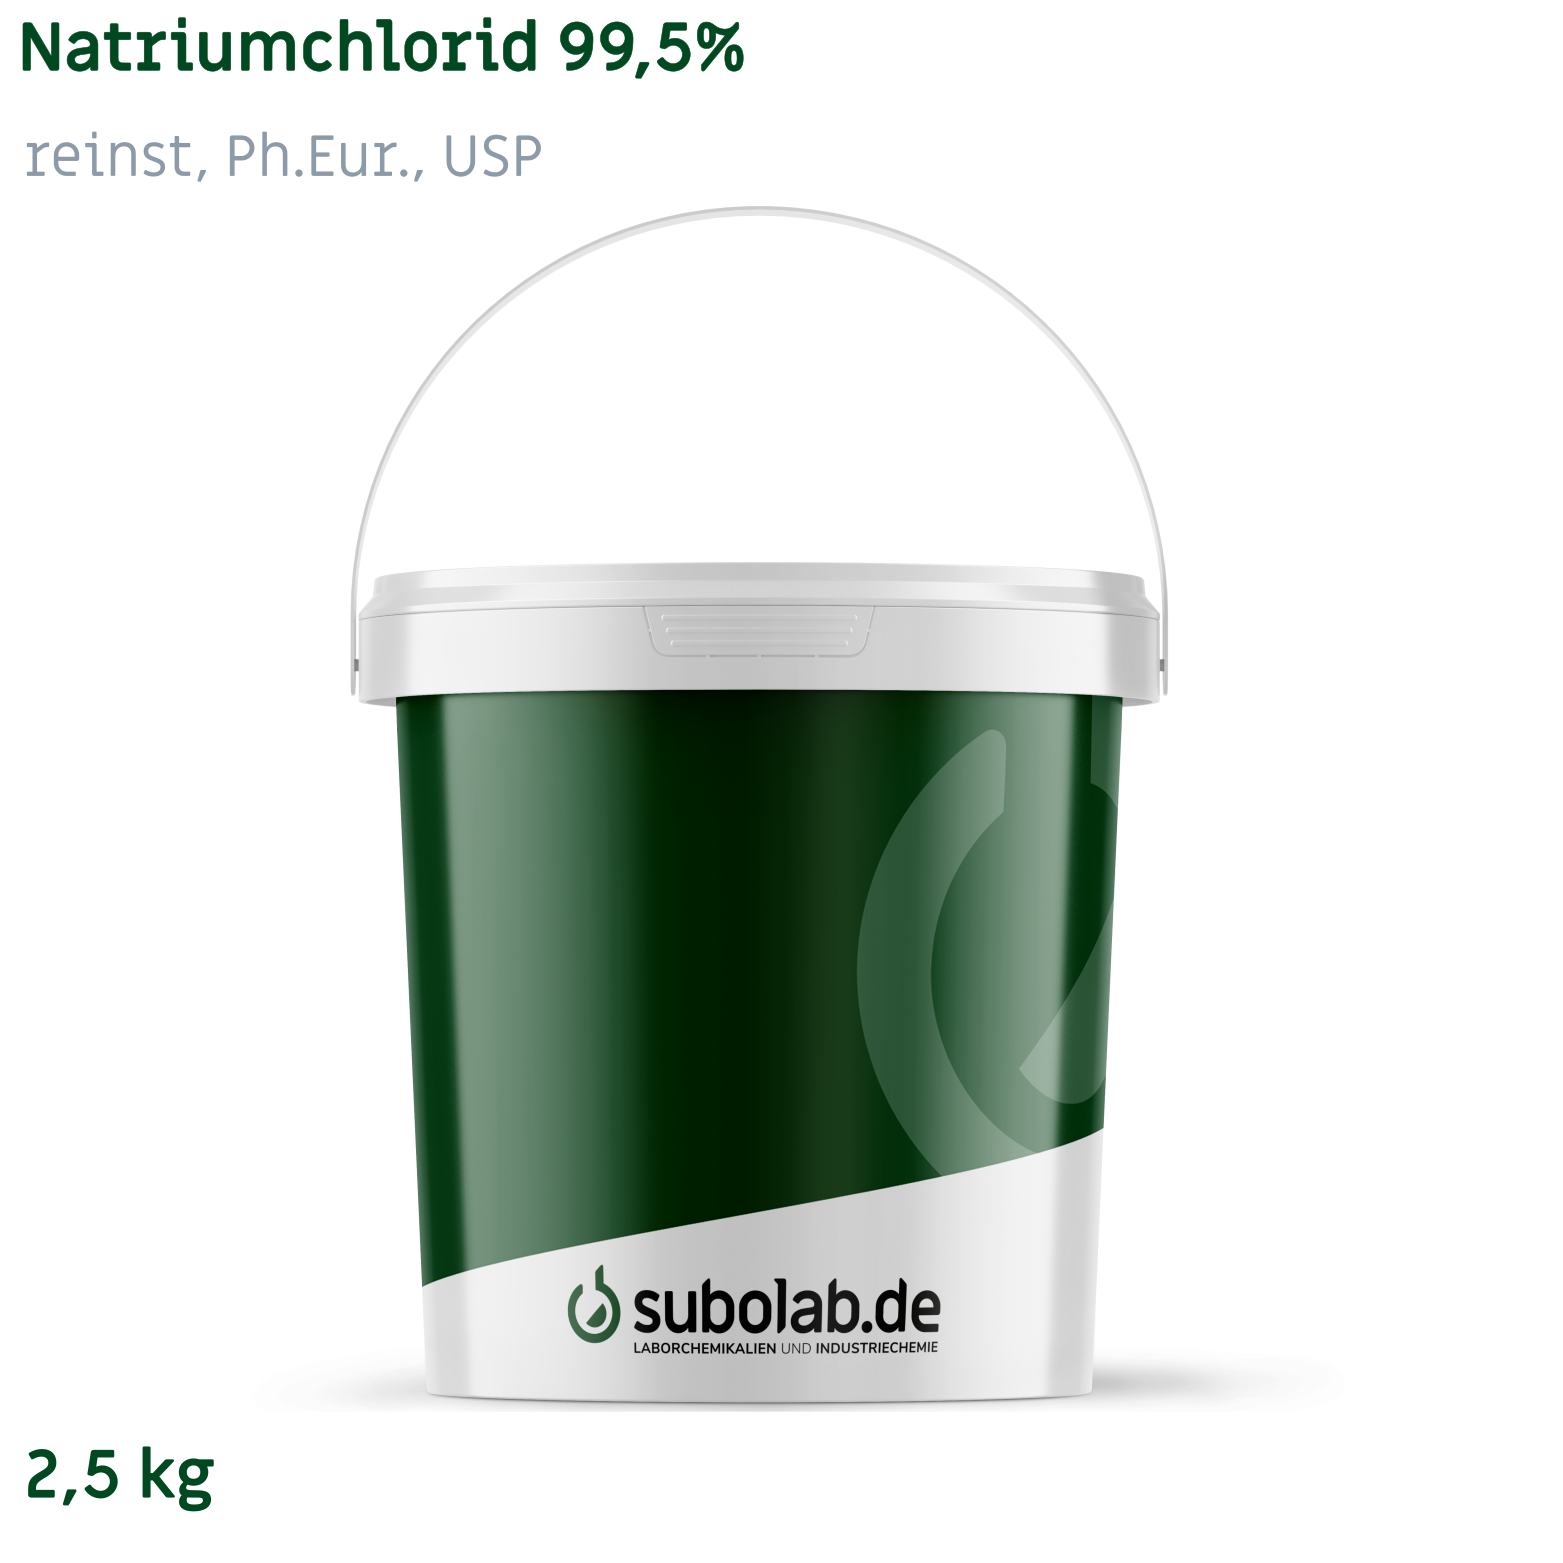 Bild von Natriumchlorid 99,5% reinst, Ph.Eur., USP (2,5 kg)